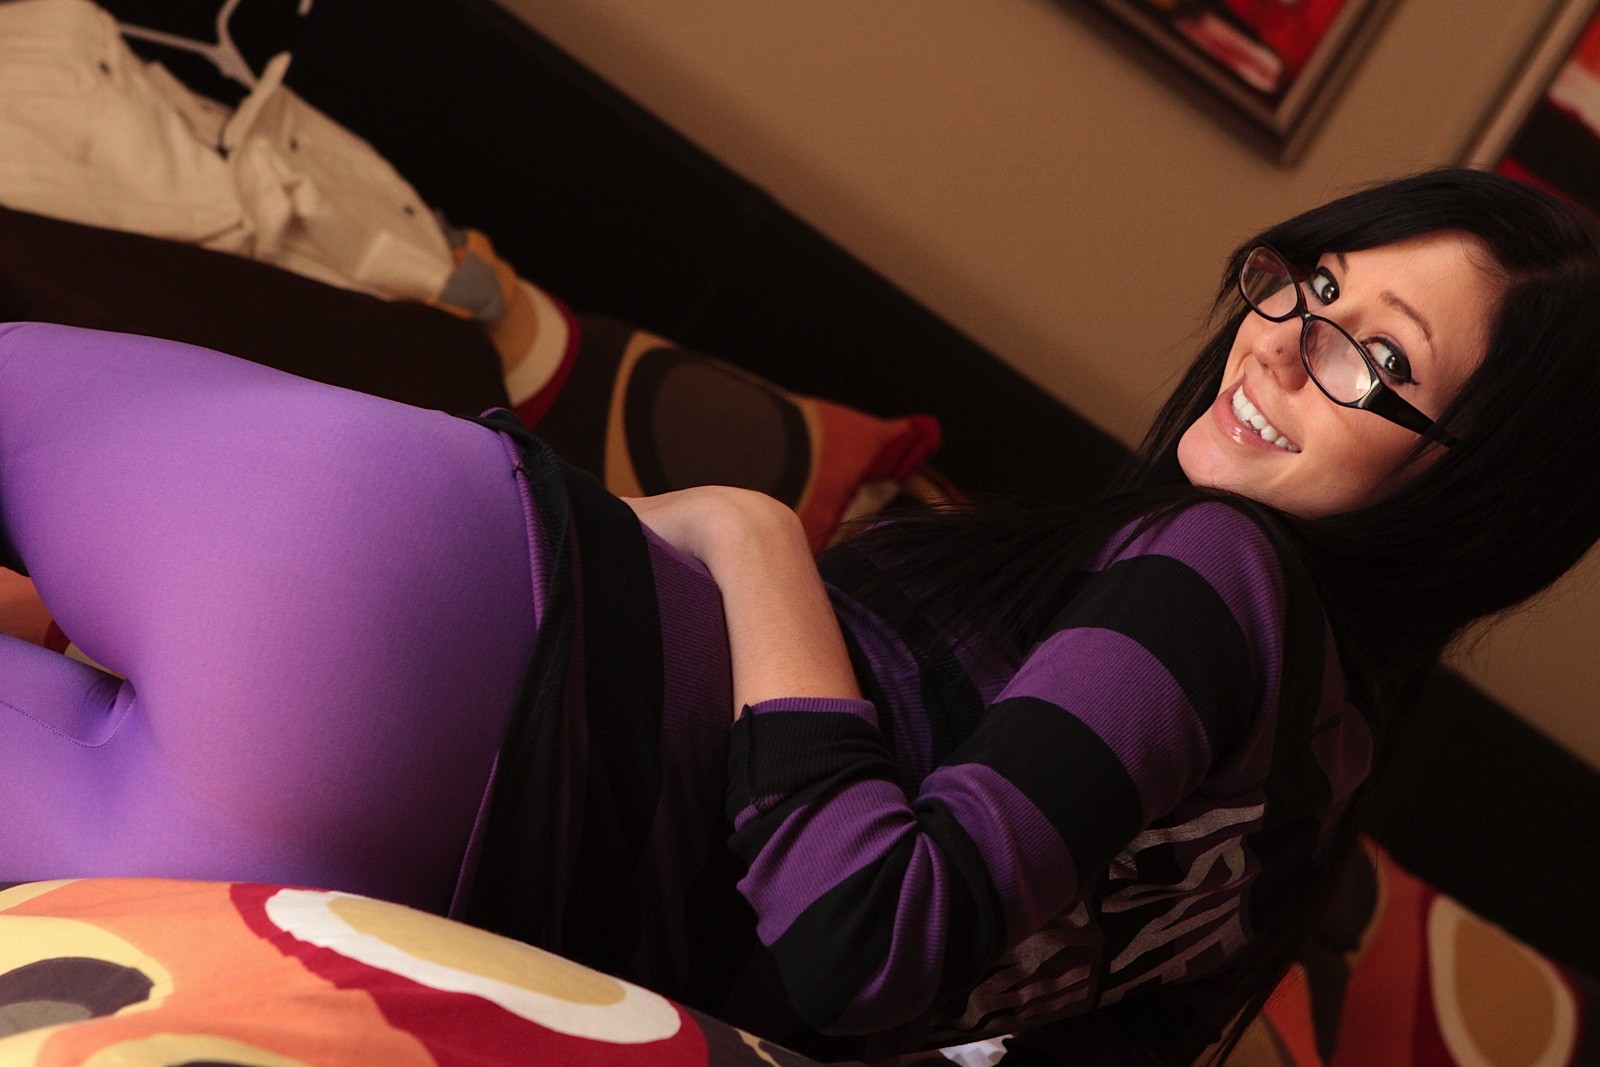 Lewd amateur geek catie minx in glasses and tense purple